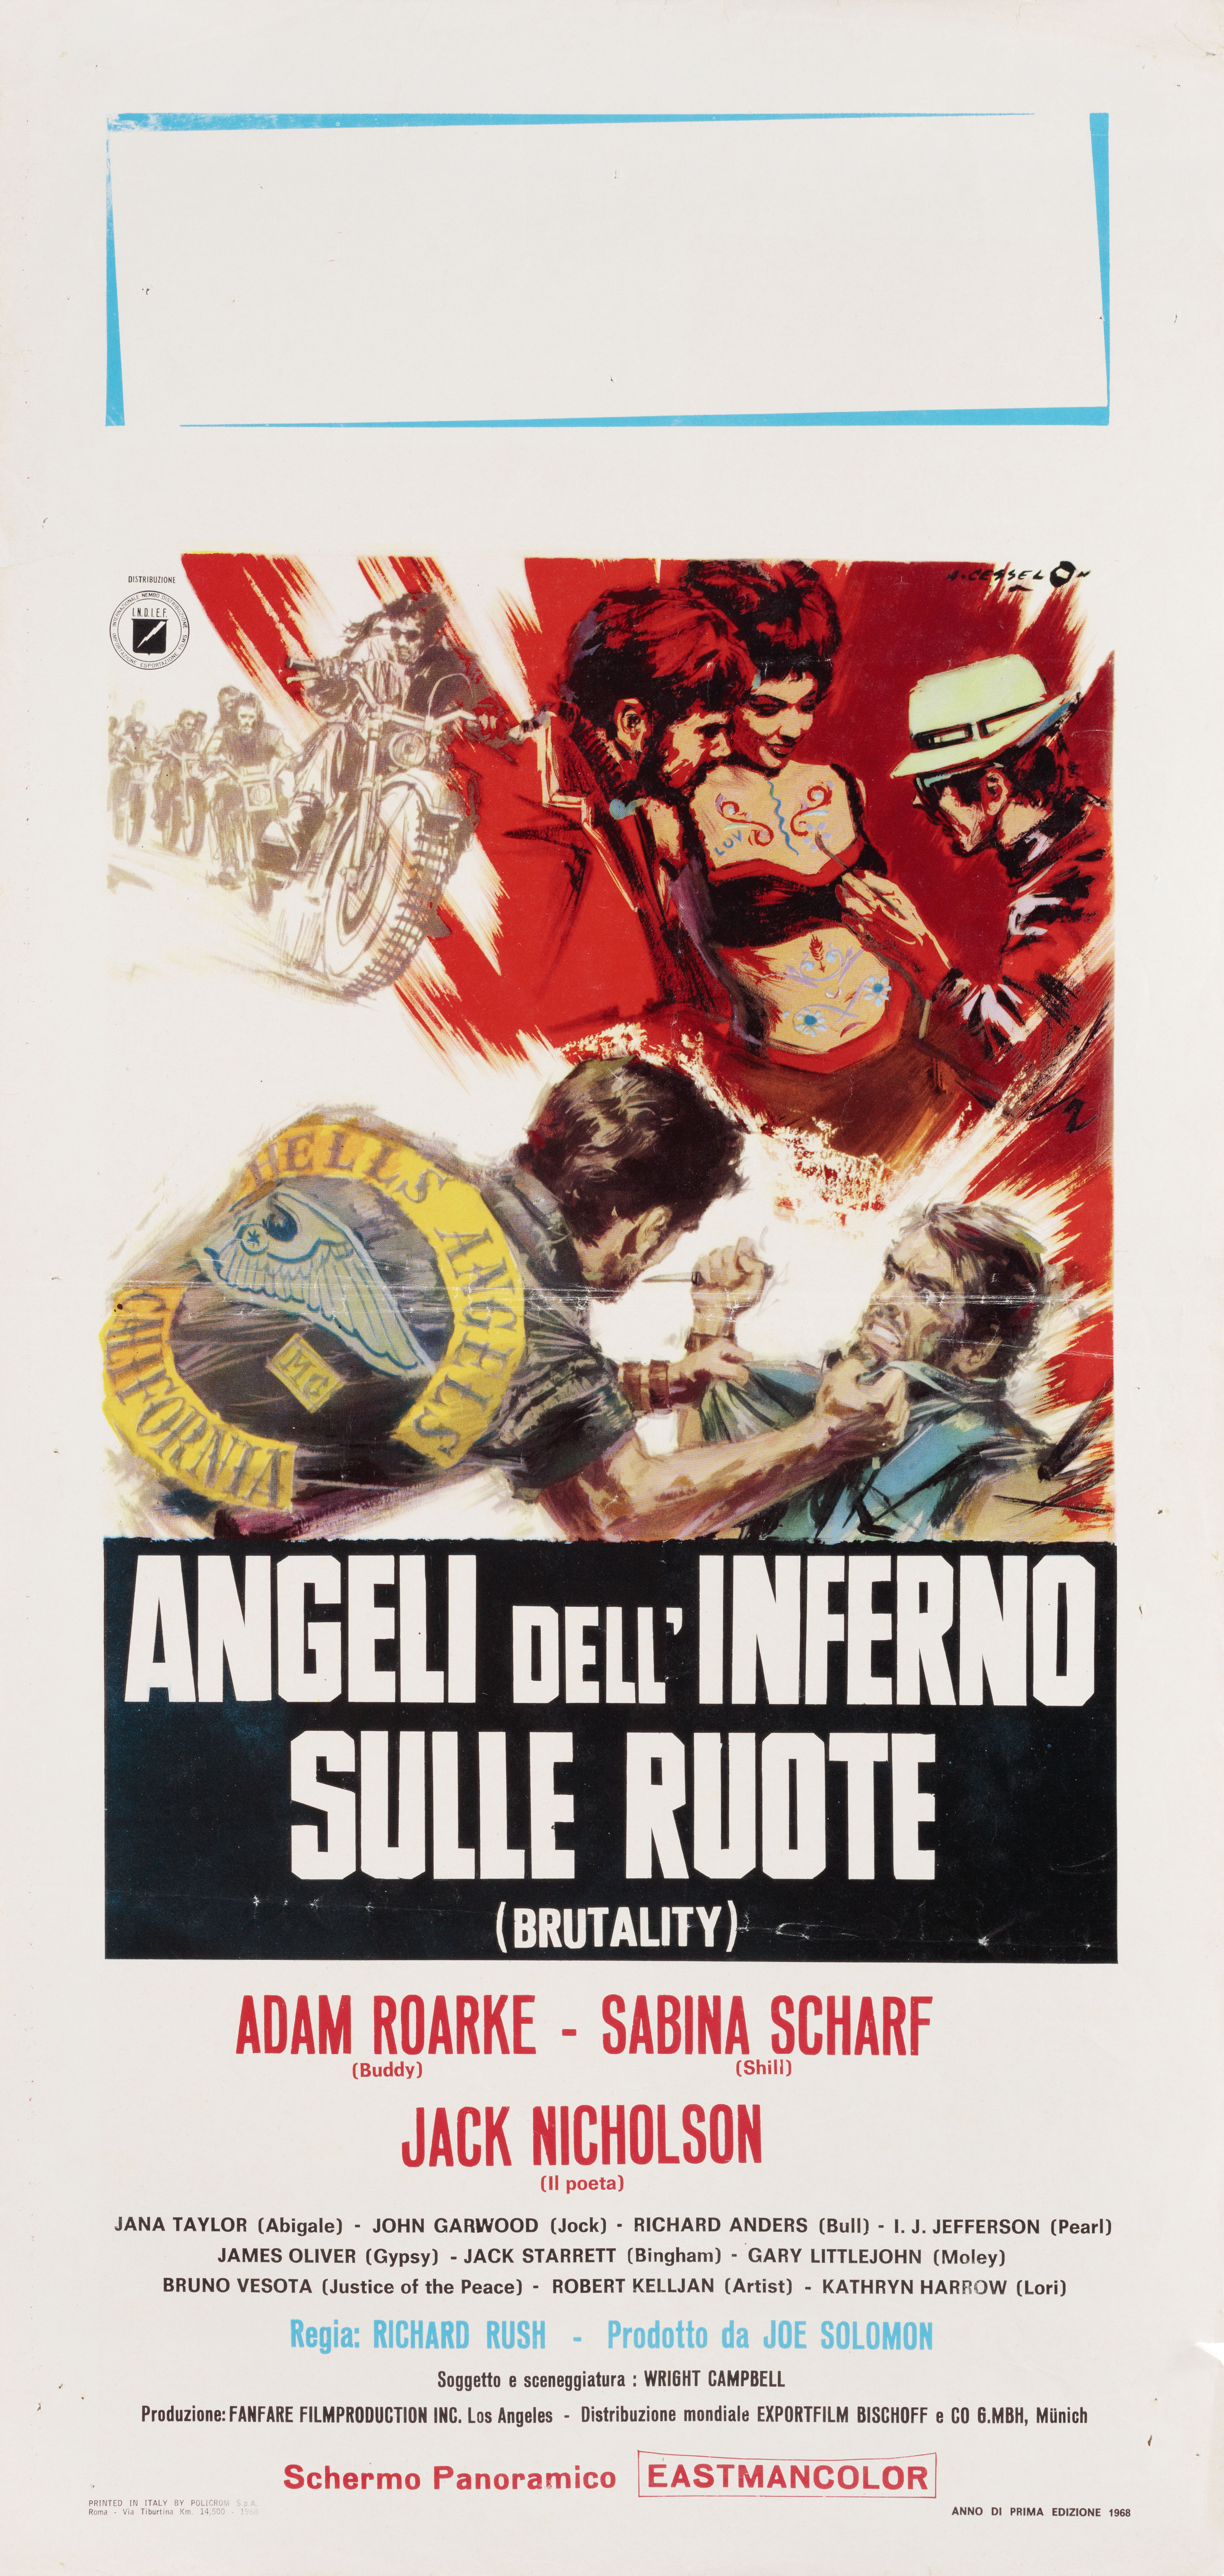 Мотоангелы ада (Hells Angels on Wheels, 1967), режиссёр Ричард Раш, художественный постер к фильму (Италия, 1967 год), автор Аверардо Чириелло